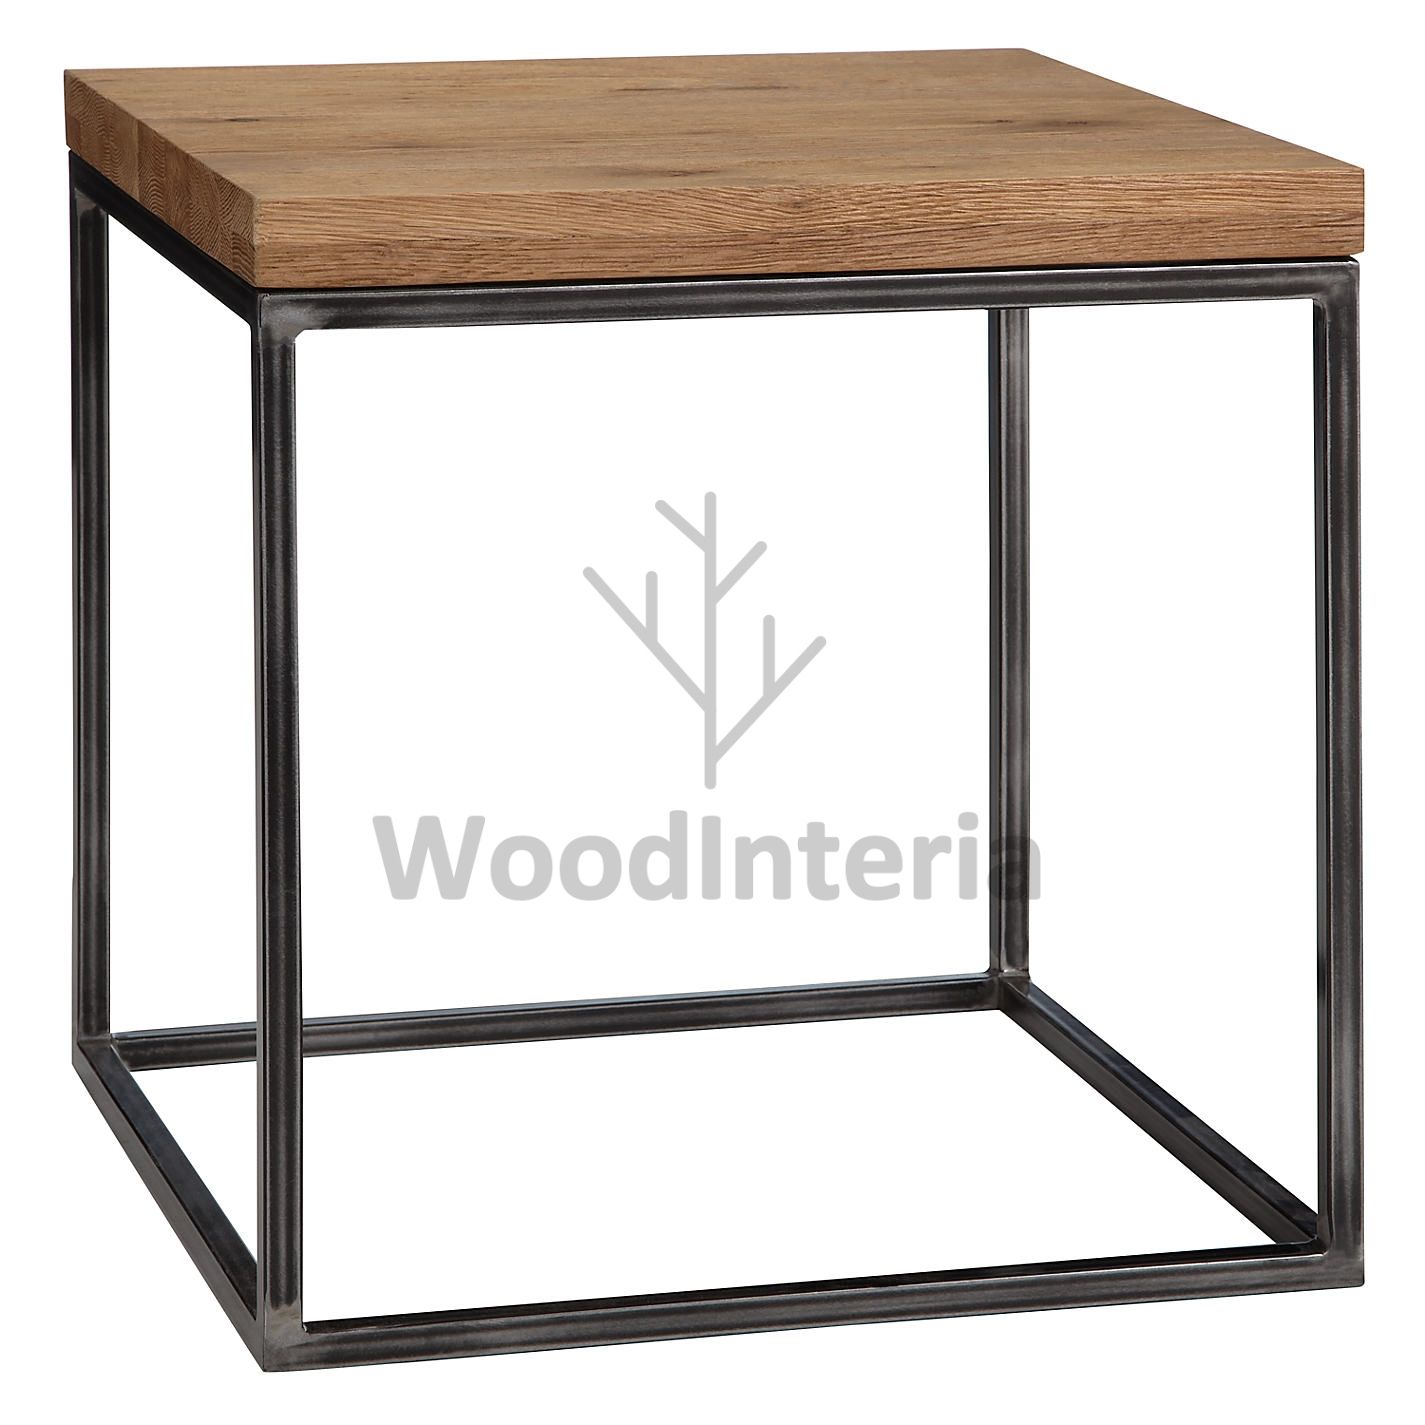 фото журнальный столик loft industrial oak qubris mini в интерьере лофт эко | WoodInteria